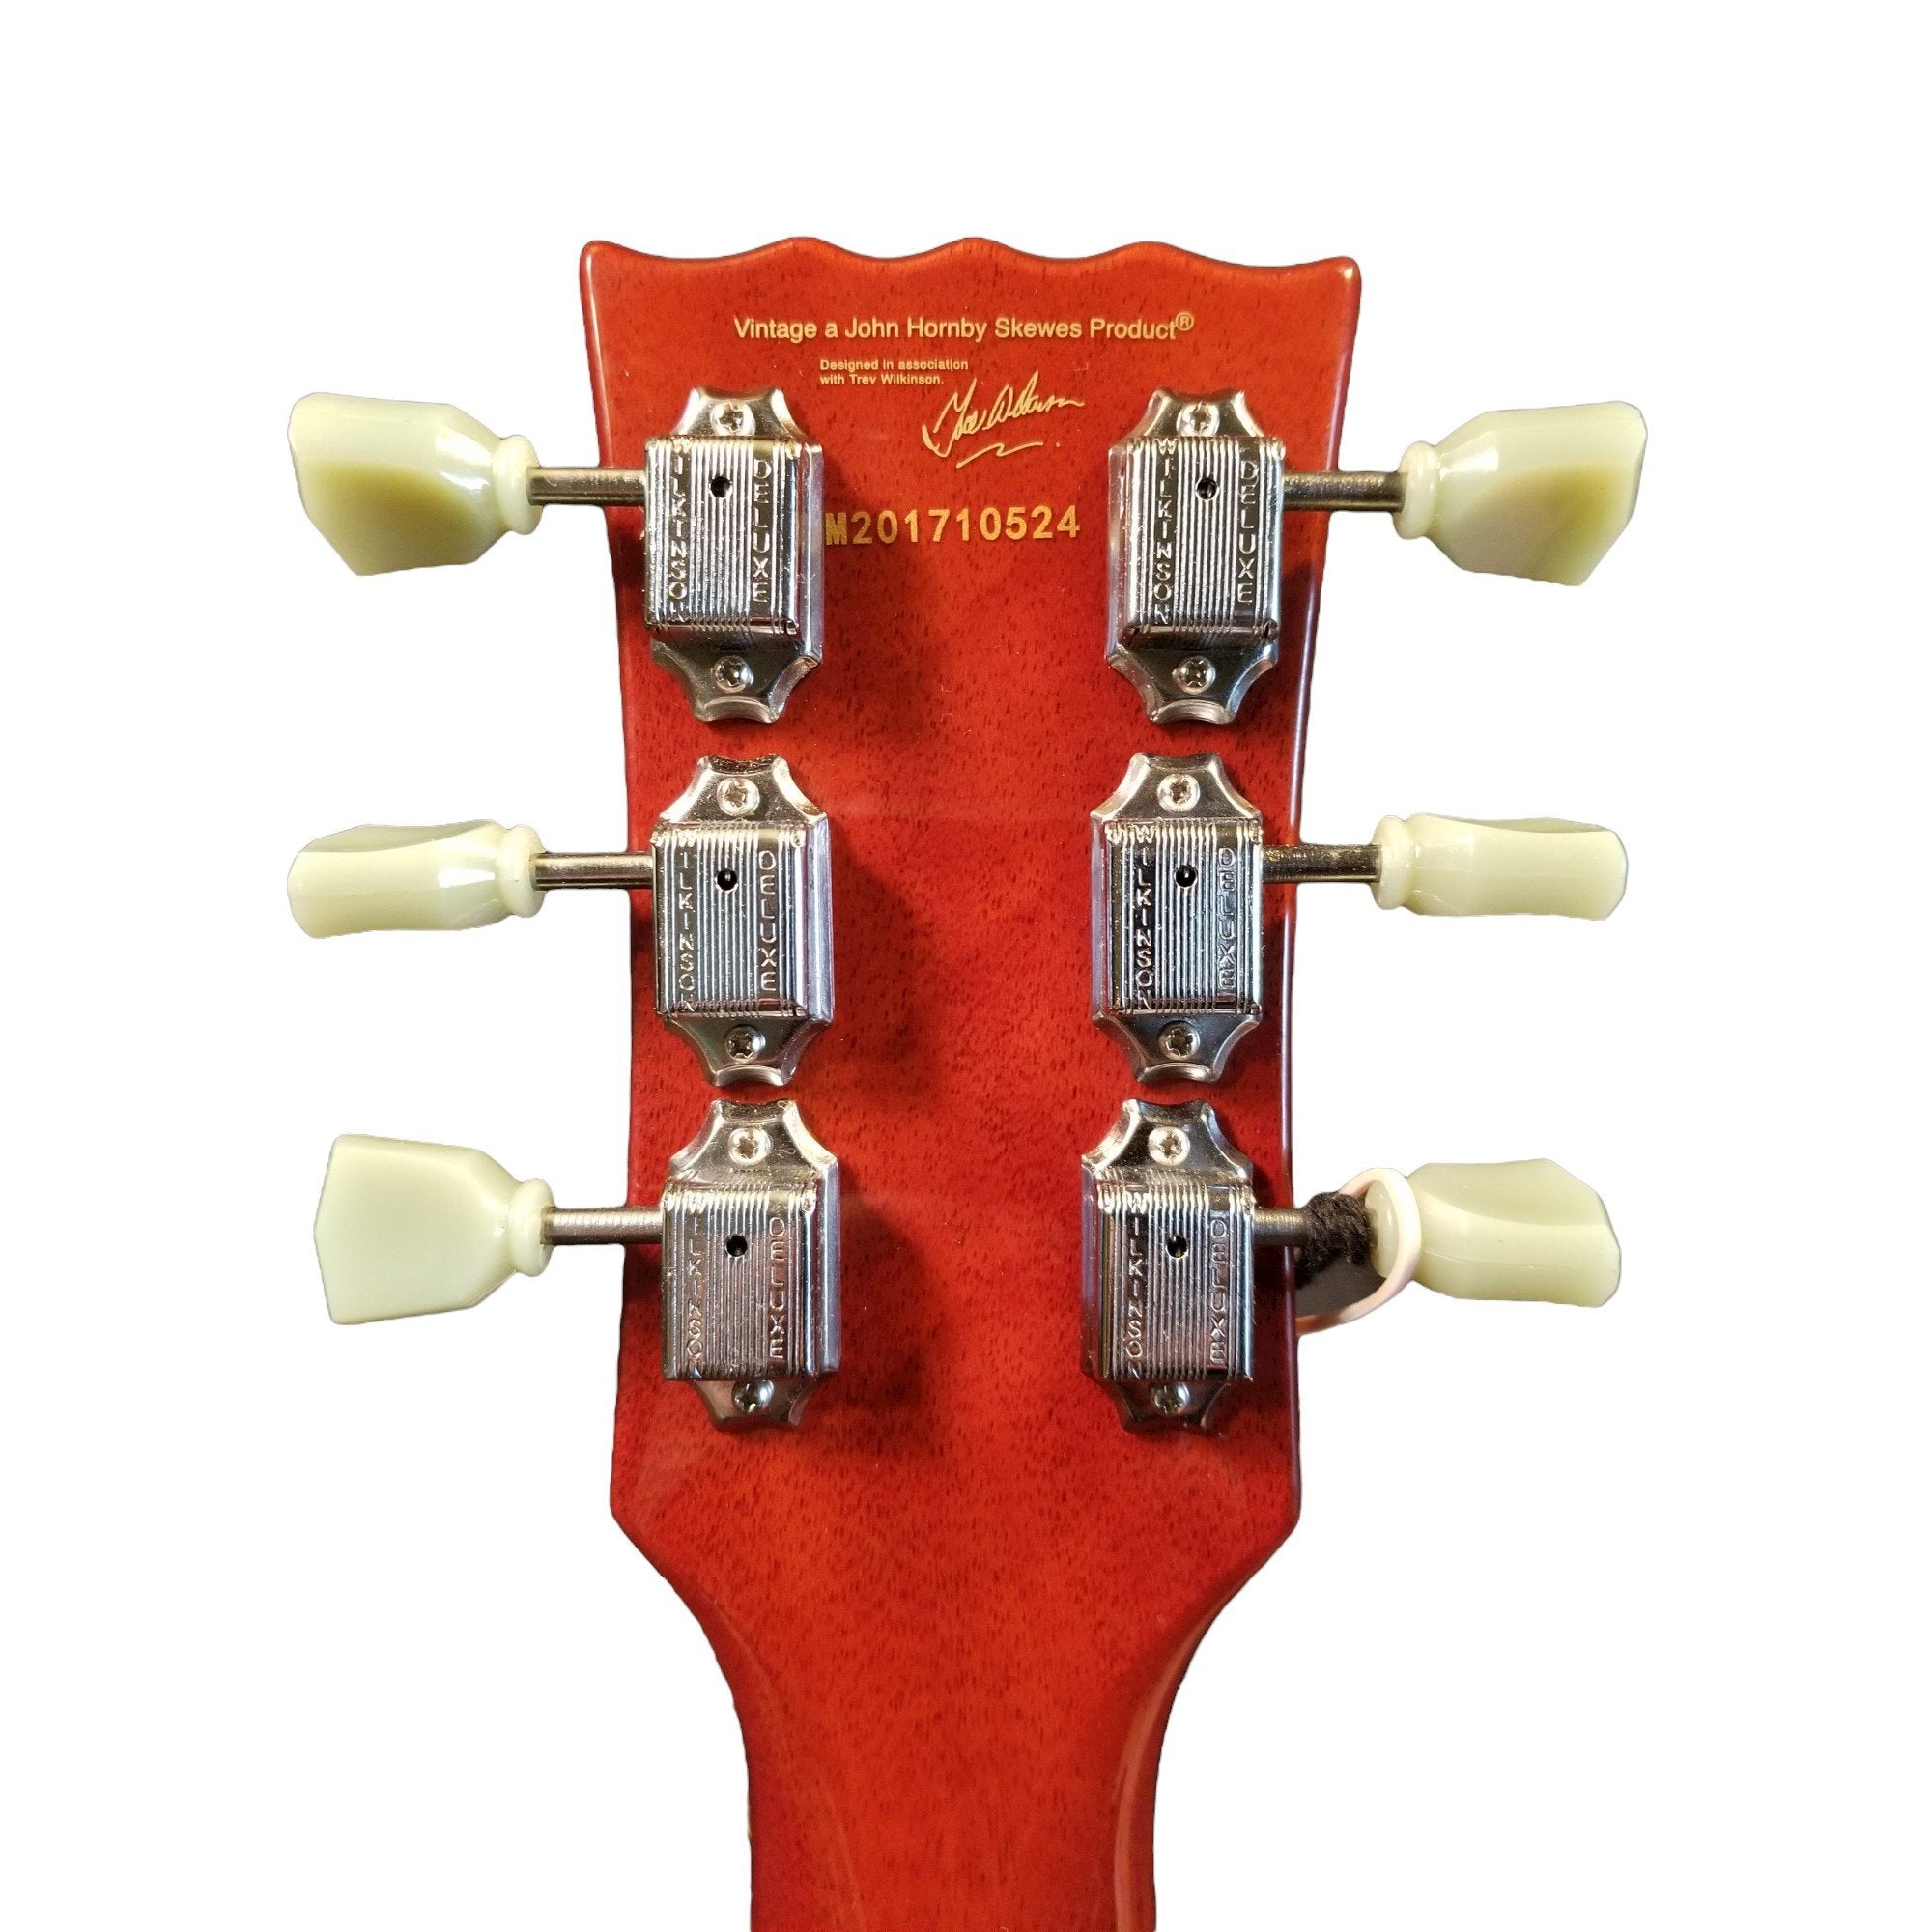 Wilkinson 3x3 Tuilip Guitar Tuning Pegs, Nickel/Keystone